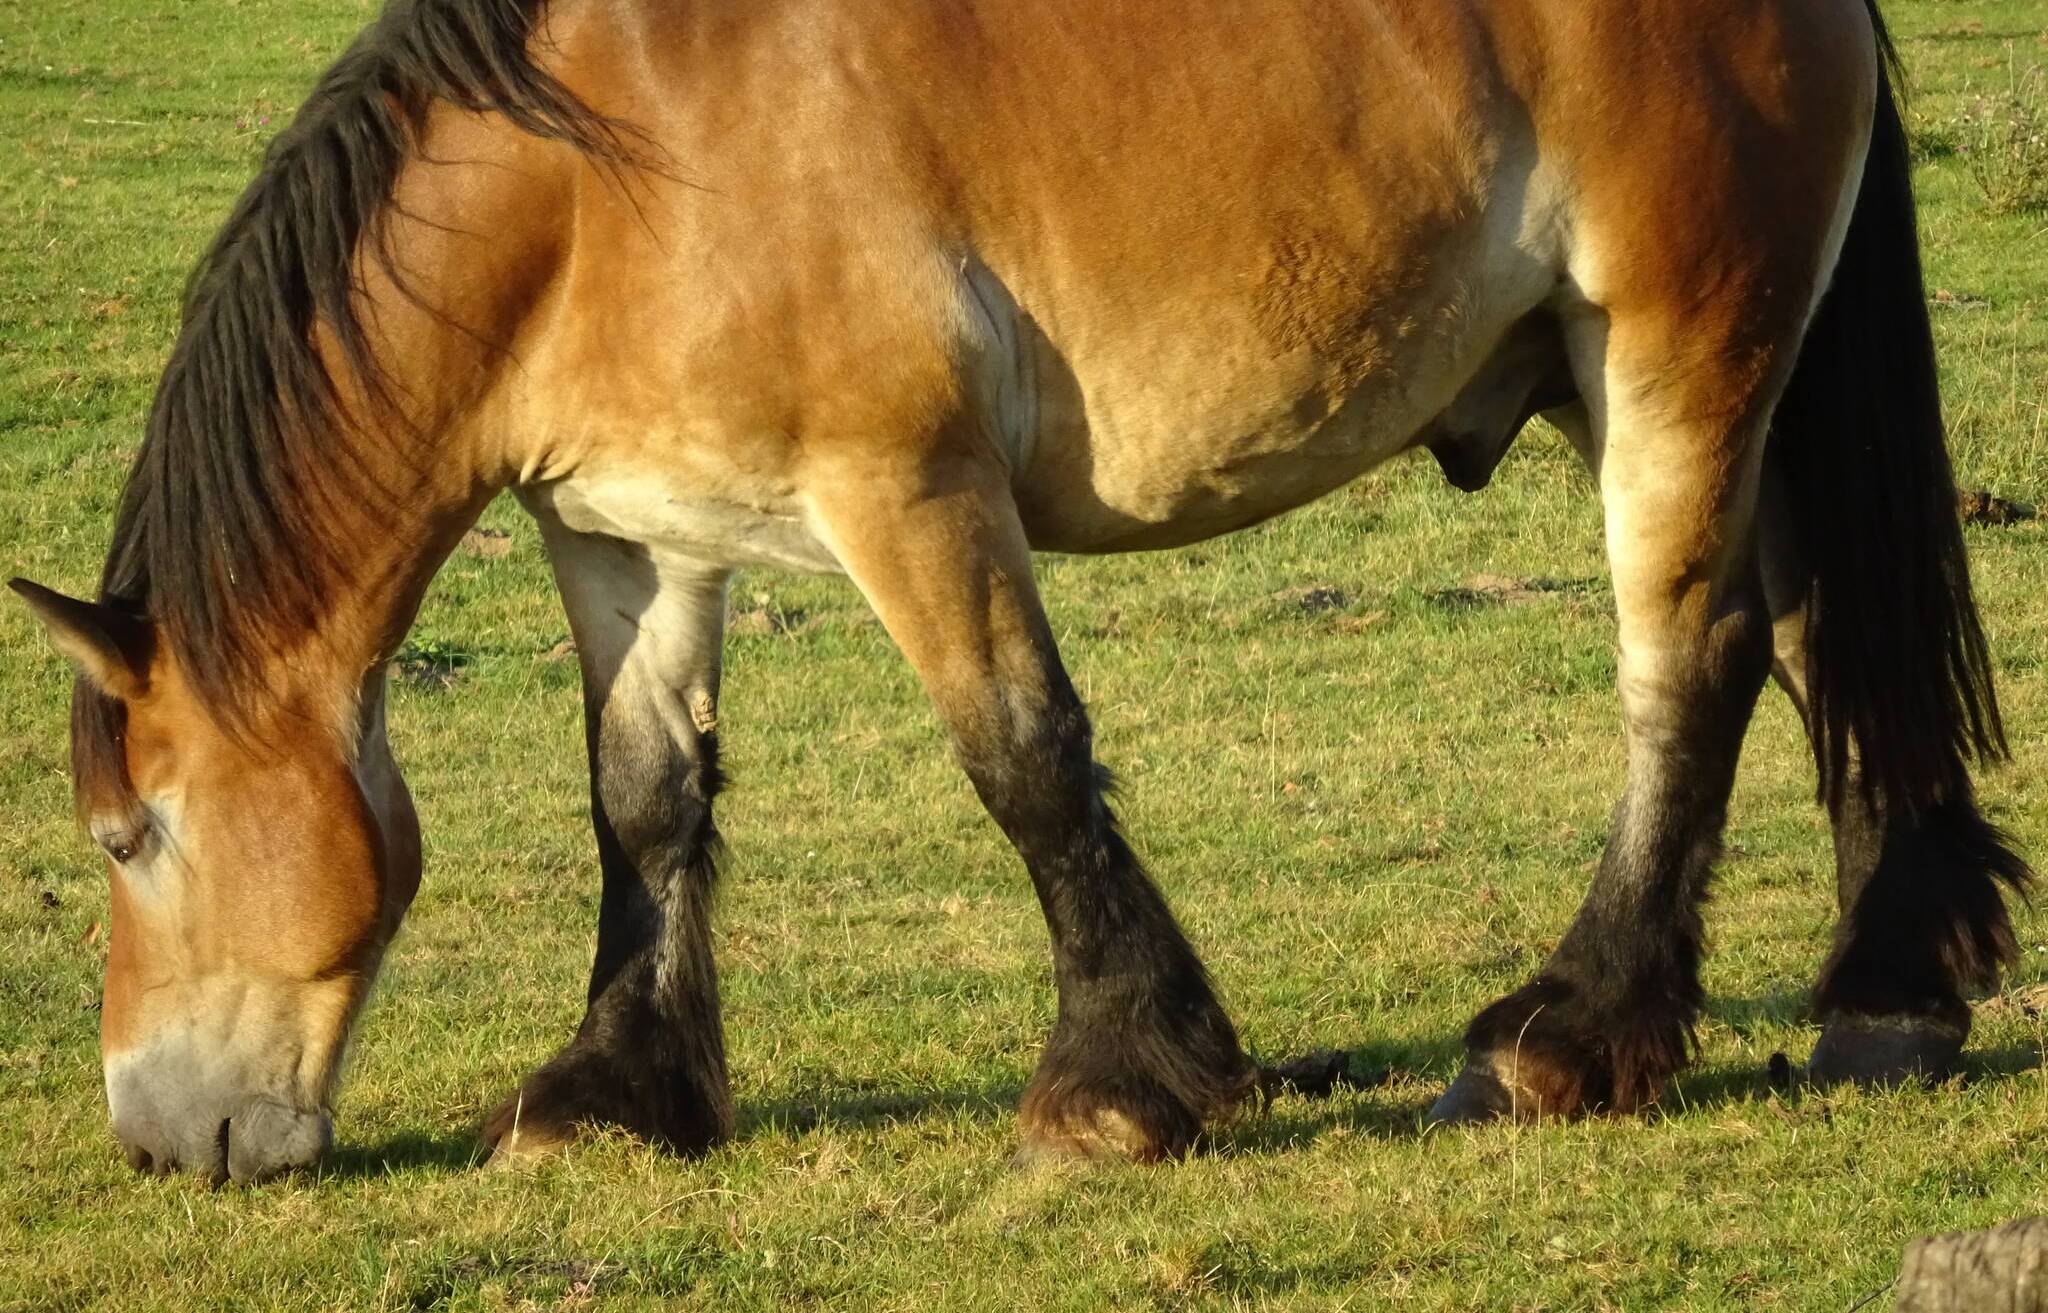  Kaltblüter sind Pferderassen, die sich durch hohes Körpergewicht und ruhiges Temperament auszeichnen, und als schwere Zugpferde eingesetzt werden. Zwei solcher Tiere stehen morgen auf dem Mettmanner Markt. 